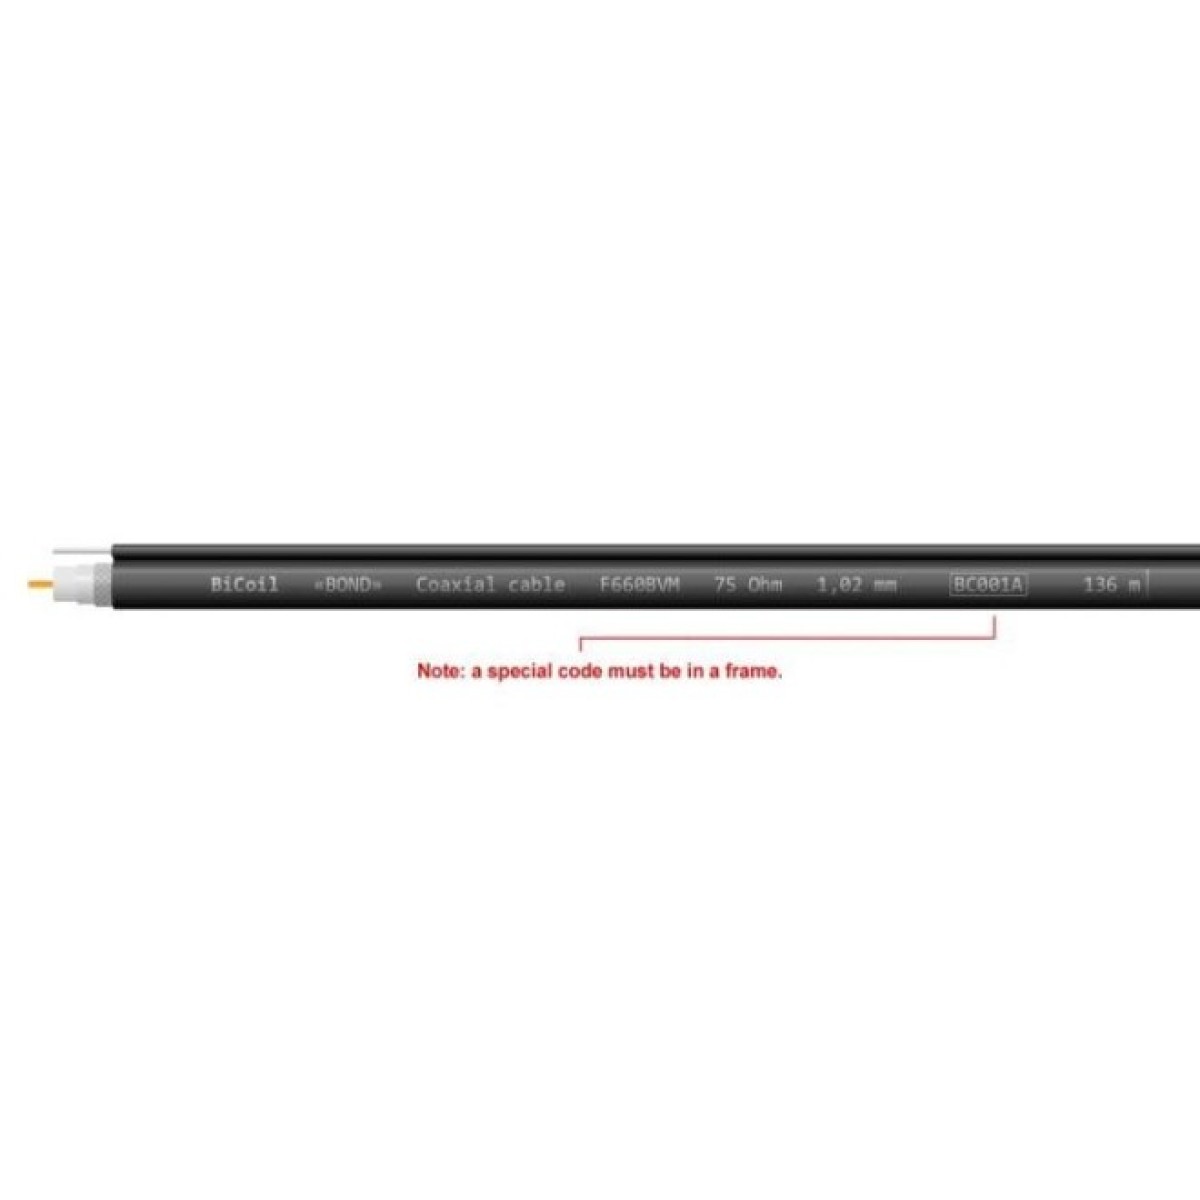 Коаксиальный кабель F660BVM CCS (Черный) 75 Ом 305м BiCoil BOND 98_98.jpg - фото 4